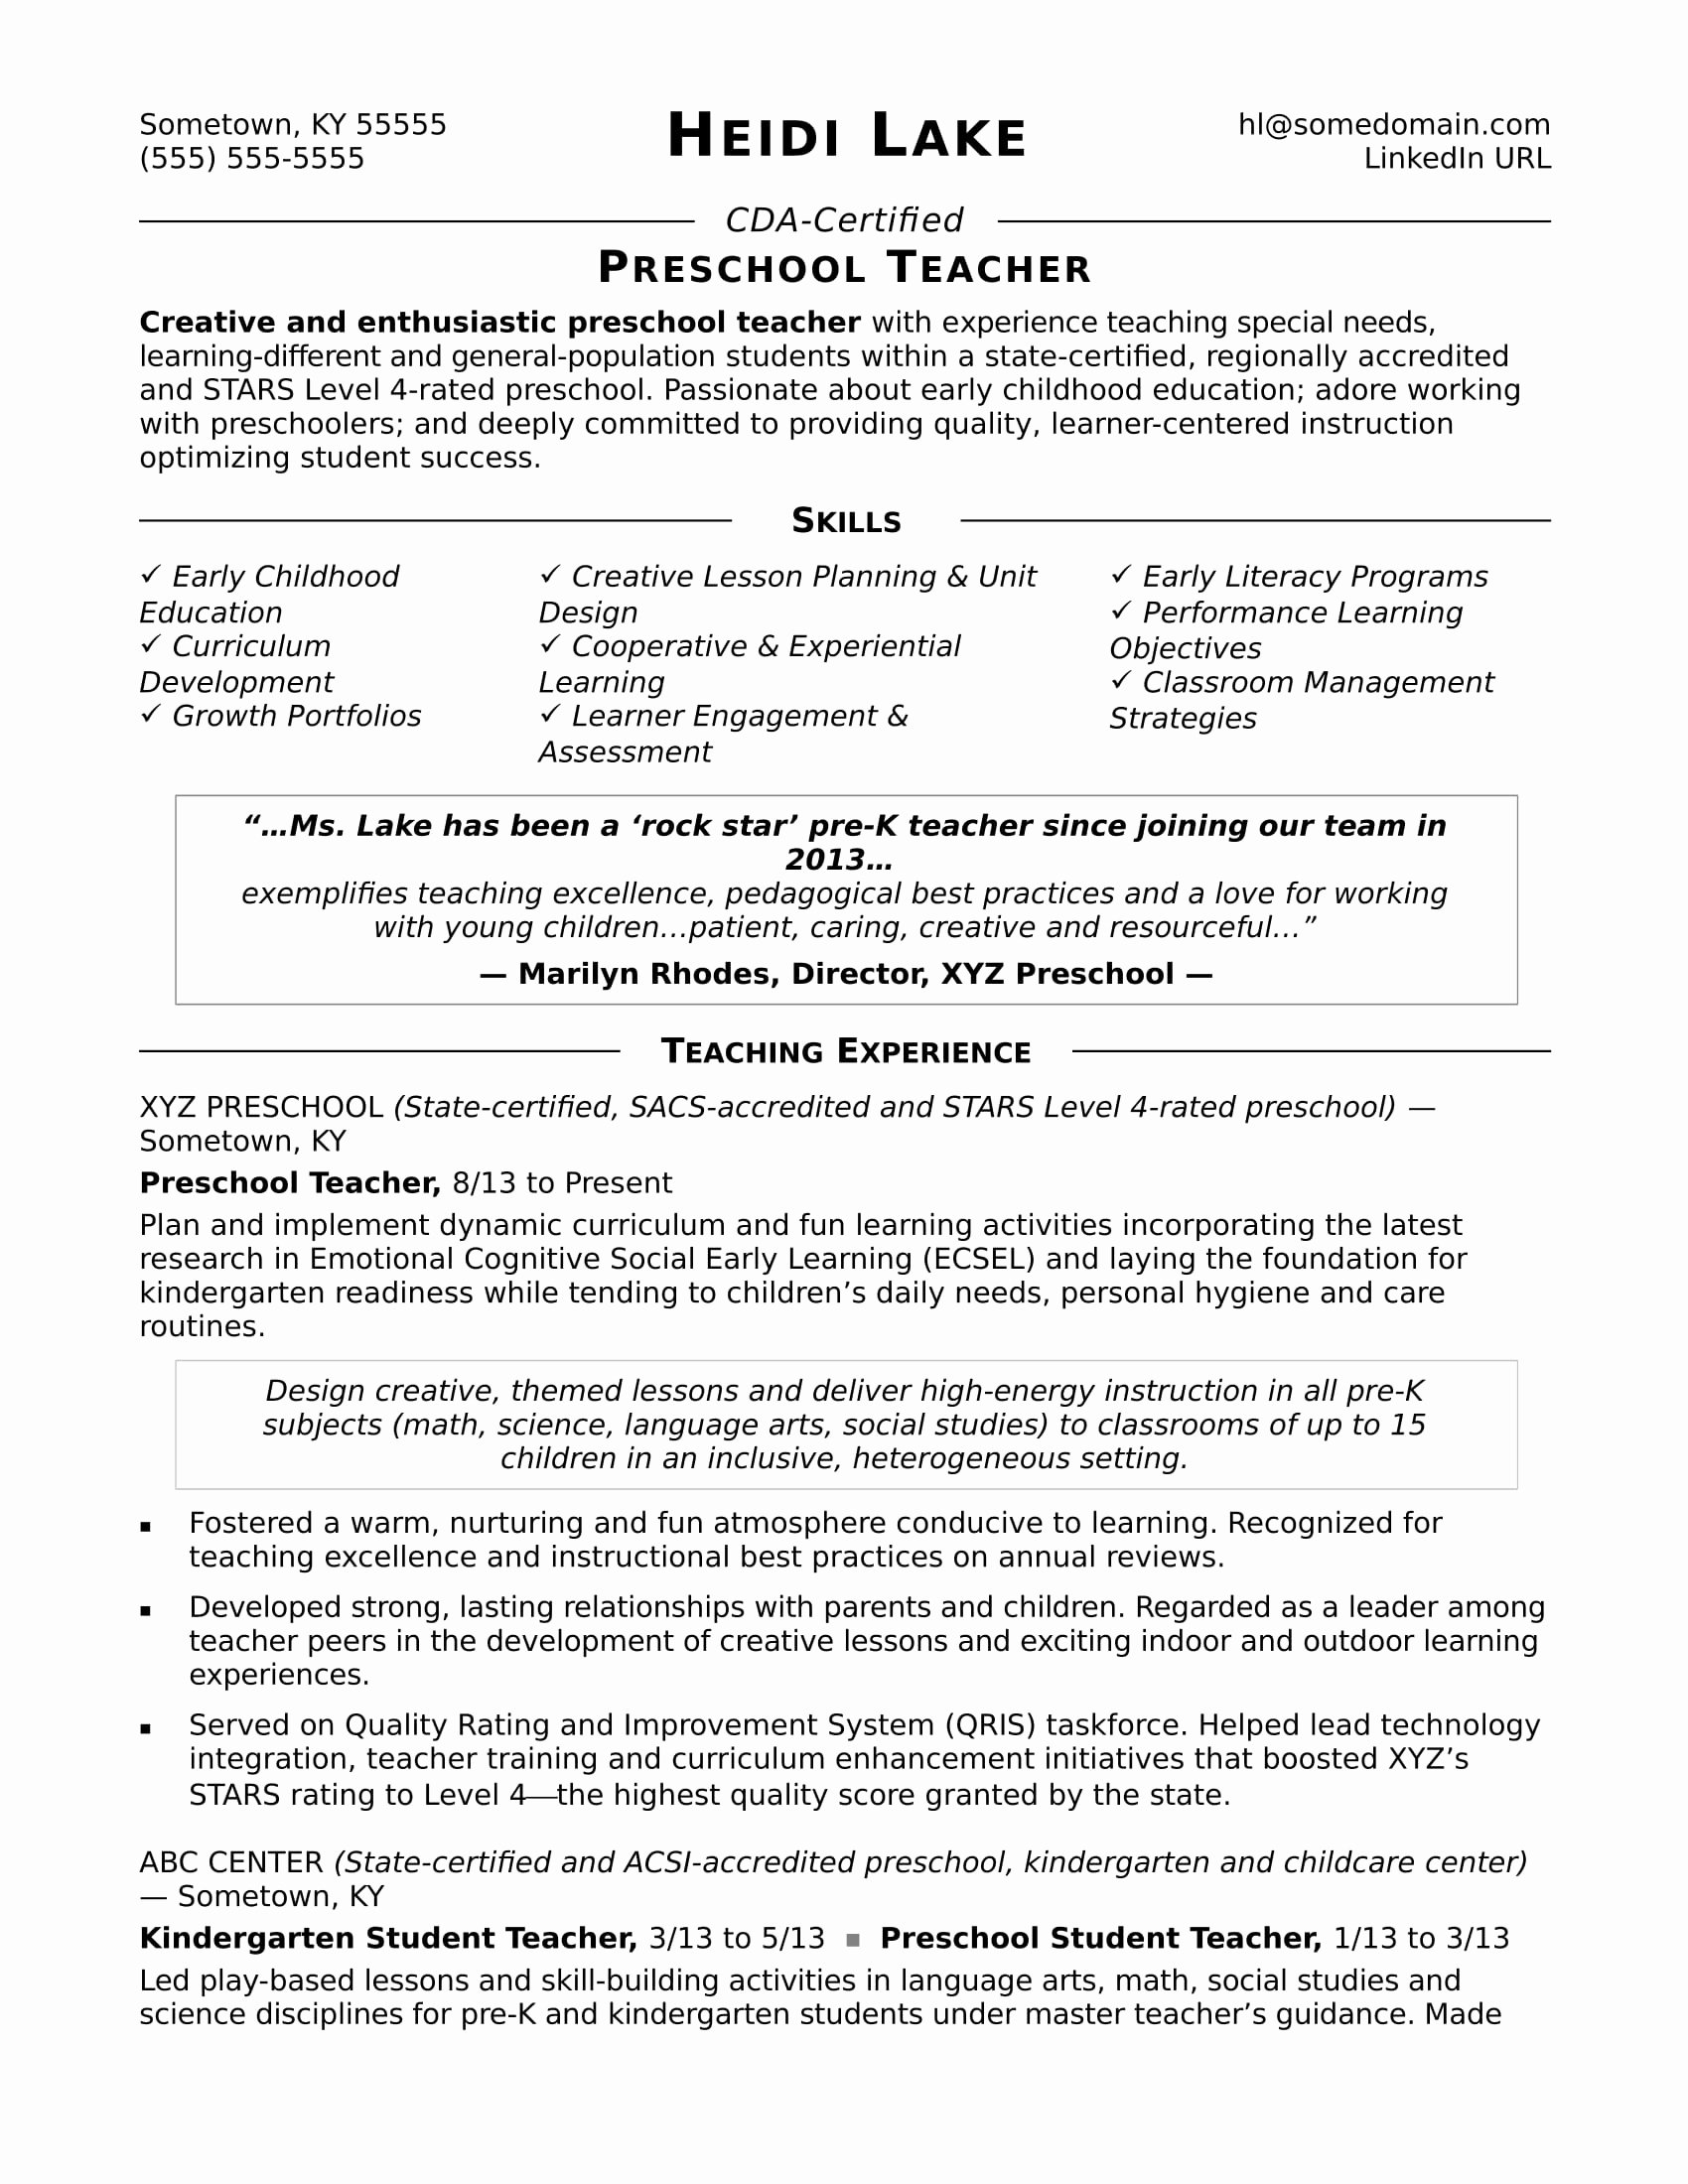 Resume Template for Teachers Elegant Preschool Teacher Resume Sample